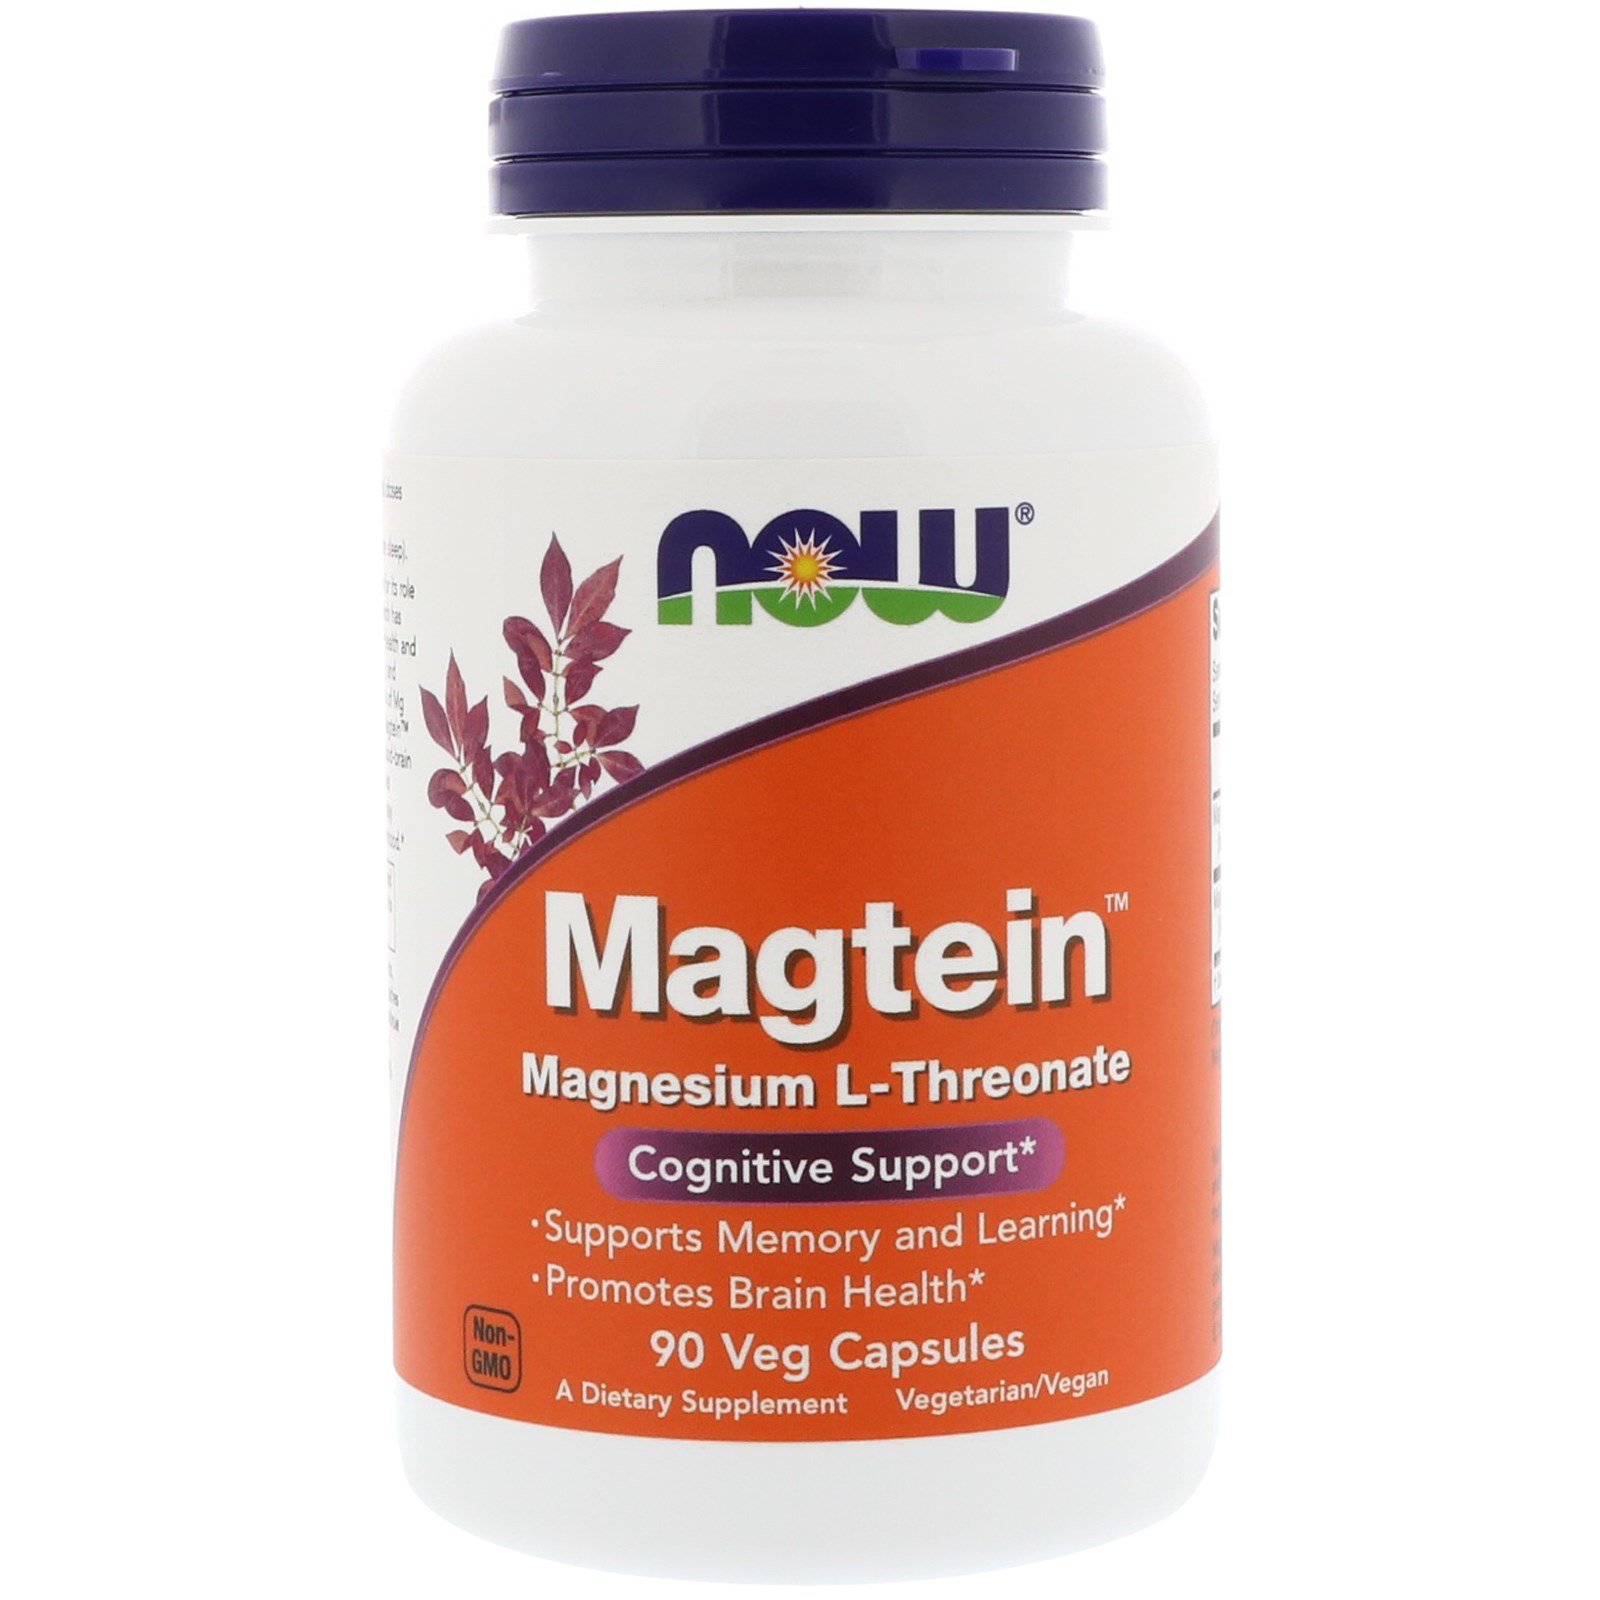 Magtein Magnesium L-Threonate 90V Caps